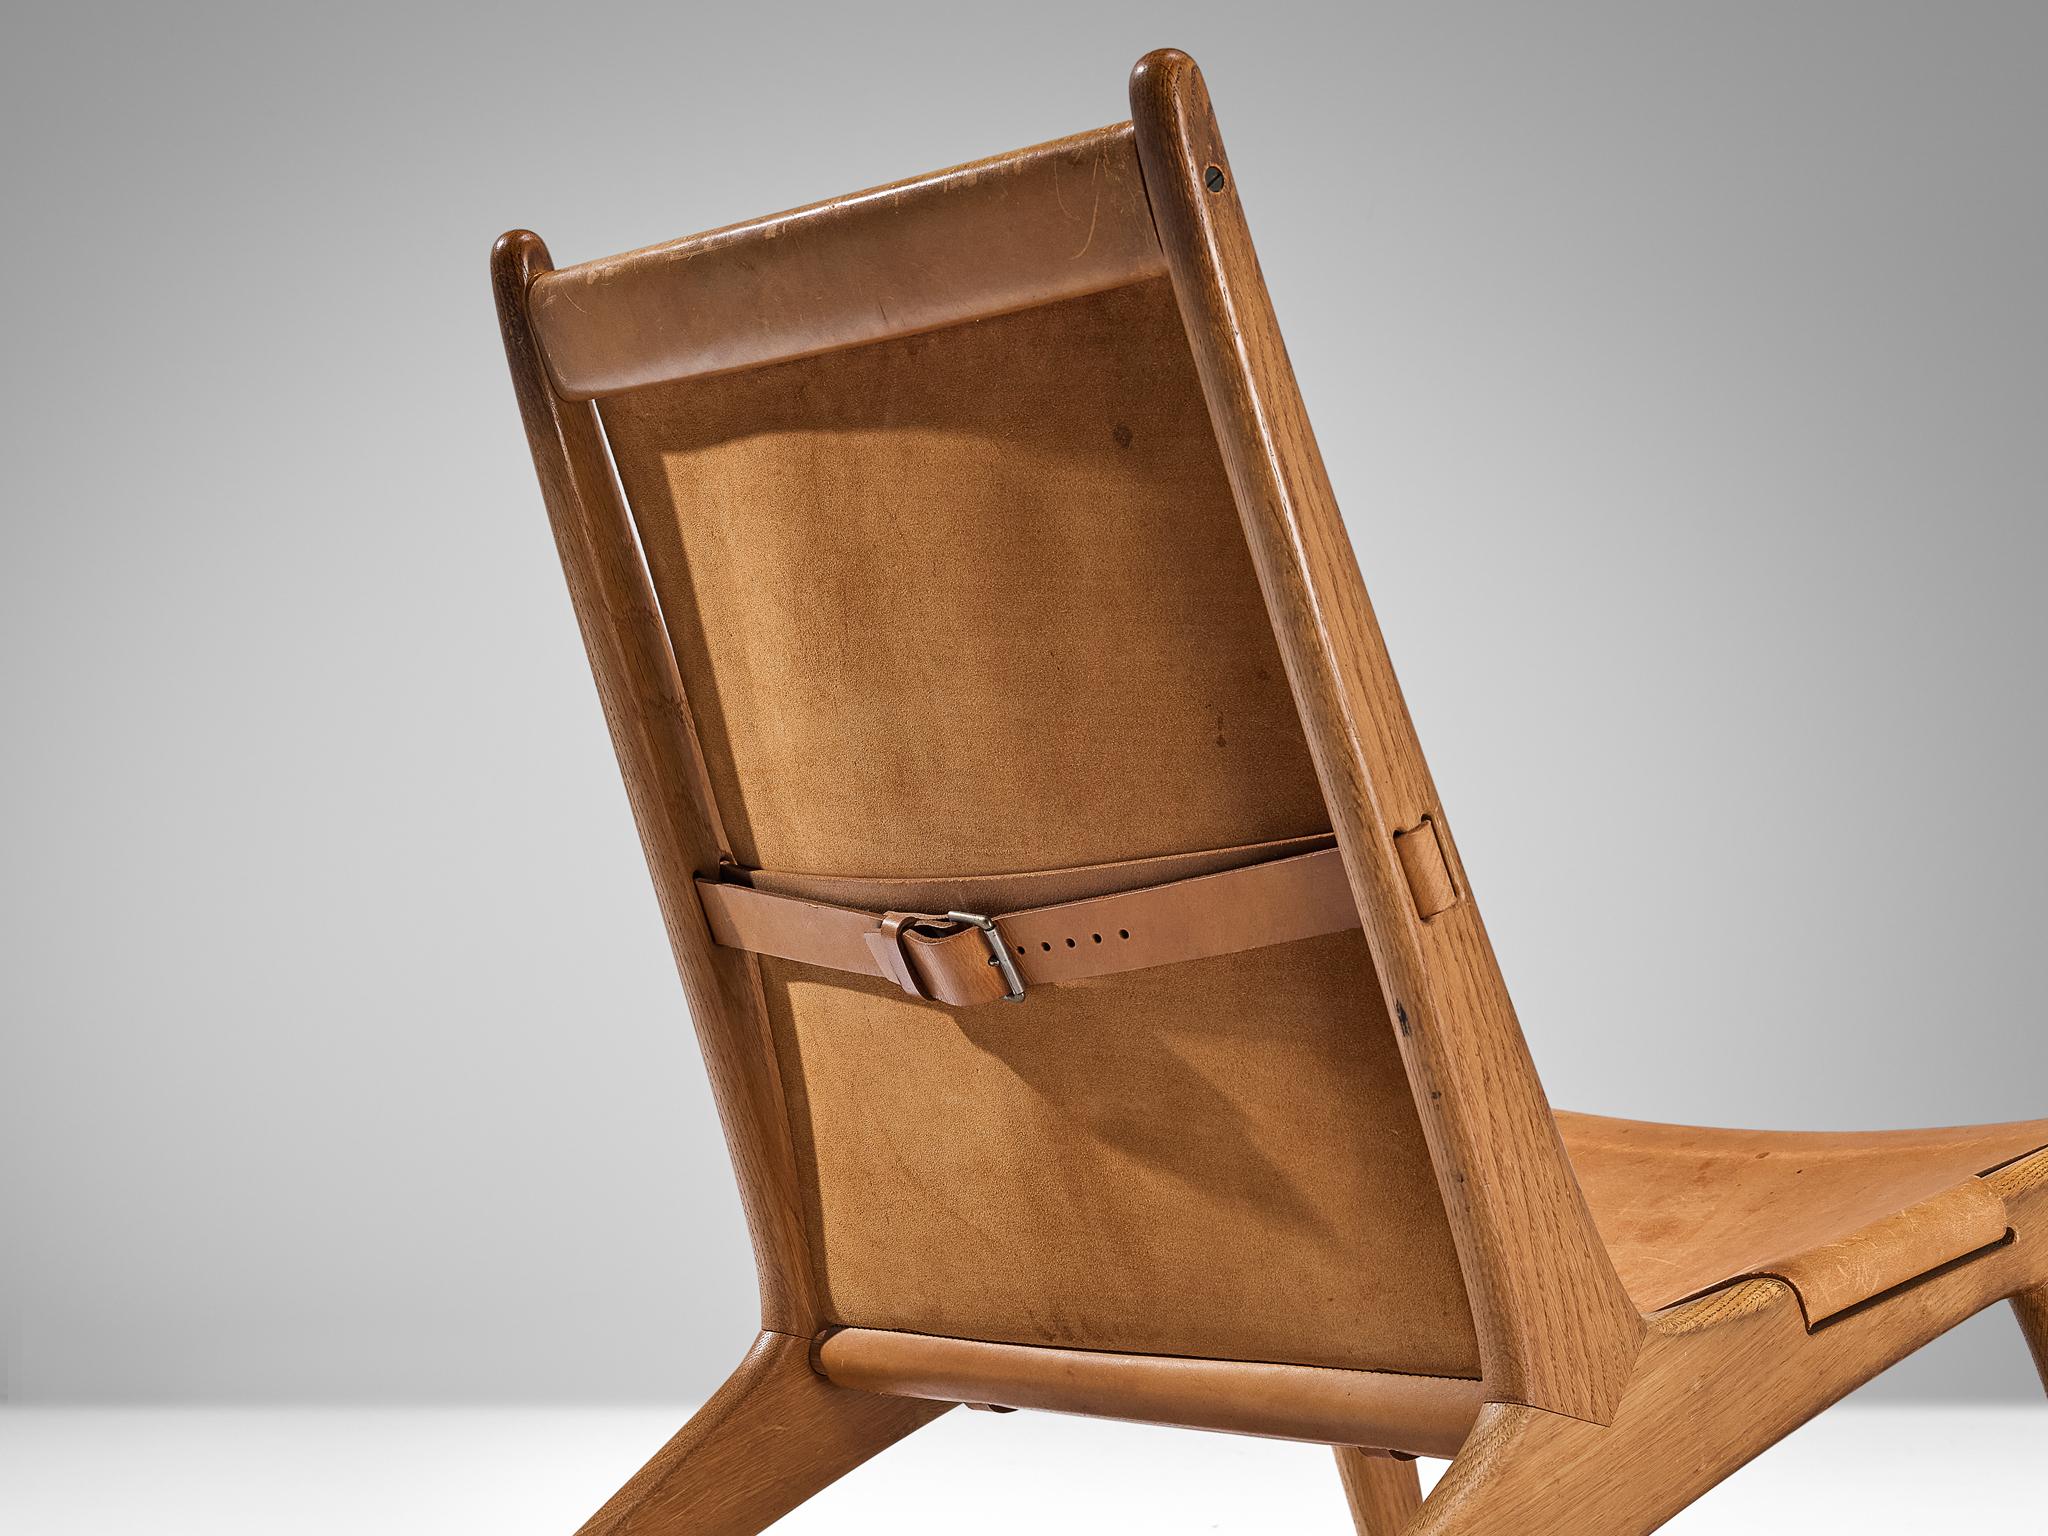 Uno & Östen Kristiansson pour Luxus, chaise de chasse, modèle '204', cuir, chêne, Suède, 1954

Chaise de chasse suédoise conçue par Uno & Östen Kristiansson dans les années cinquante. Ce design unique a une apparence très forte. La construction